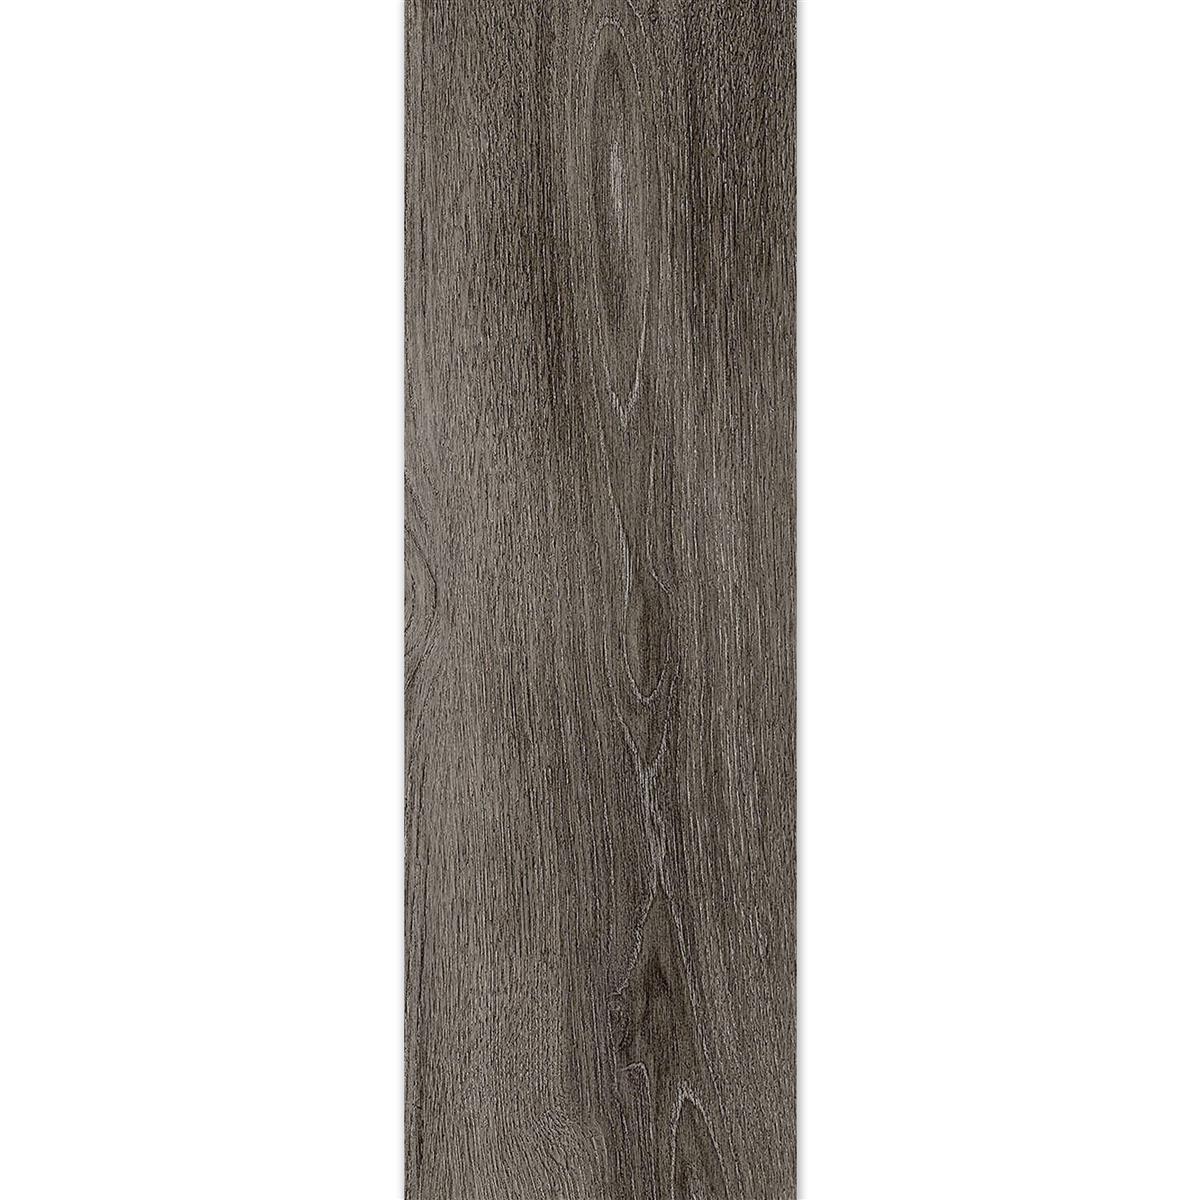 Floor Tiles Regina Wood Optic 20x120cm Smoke